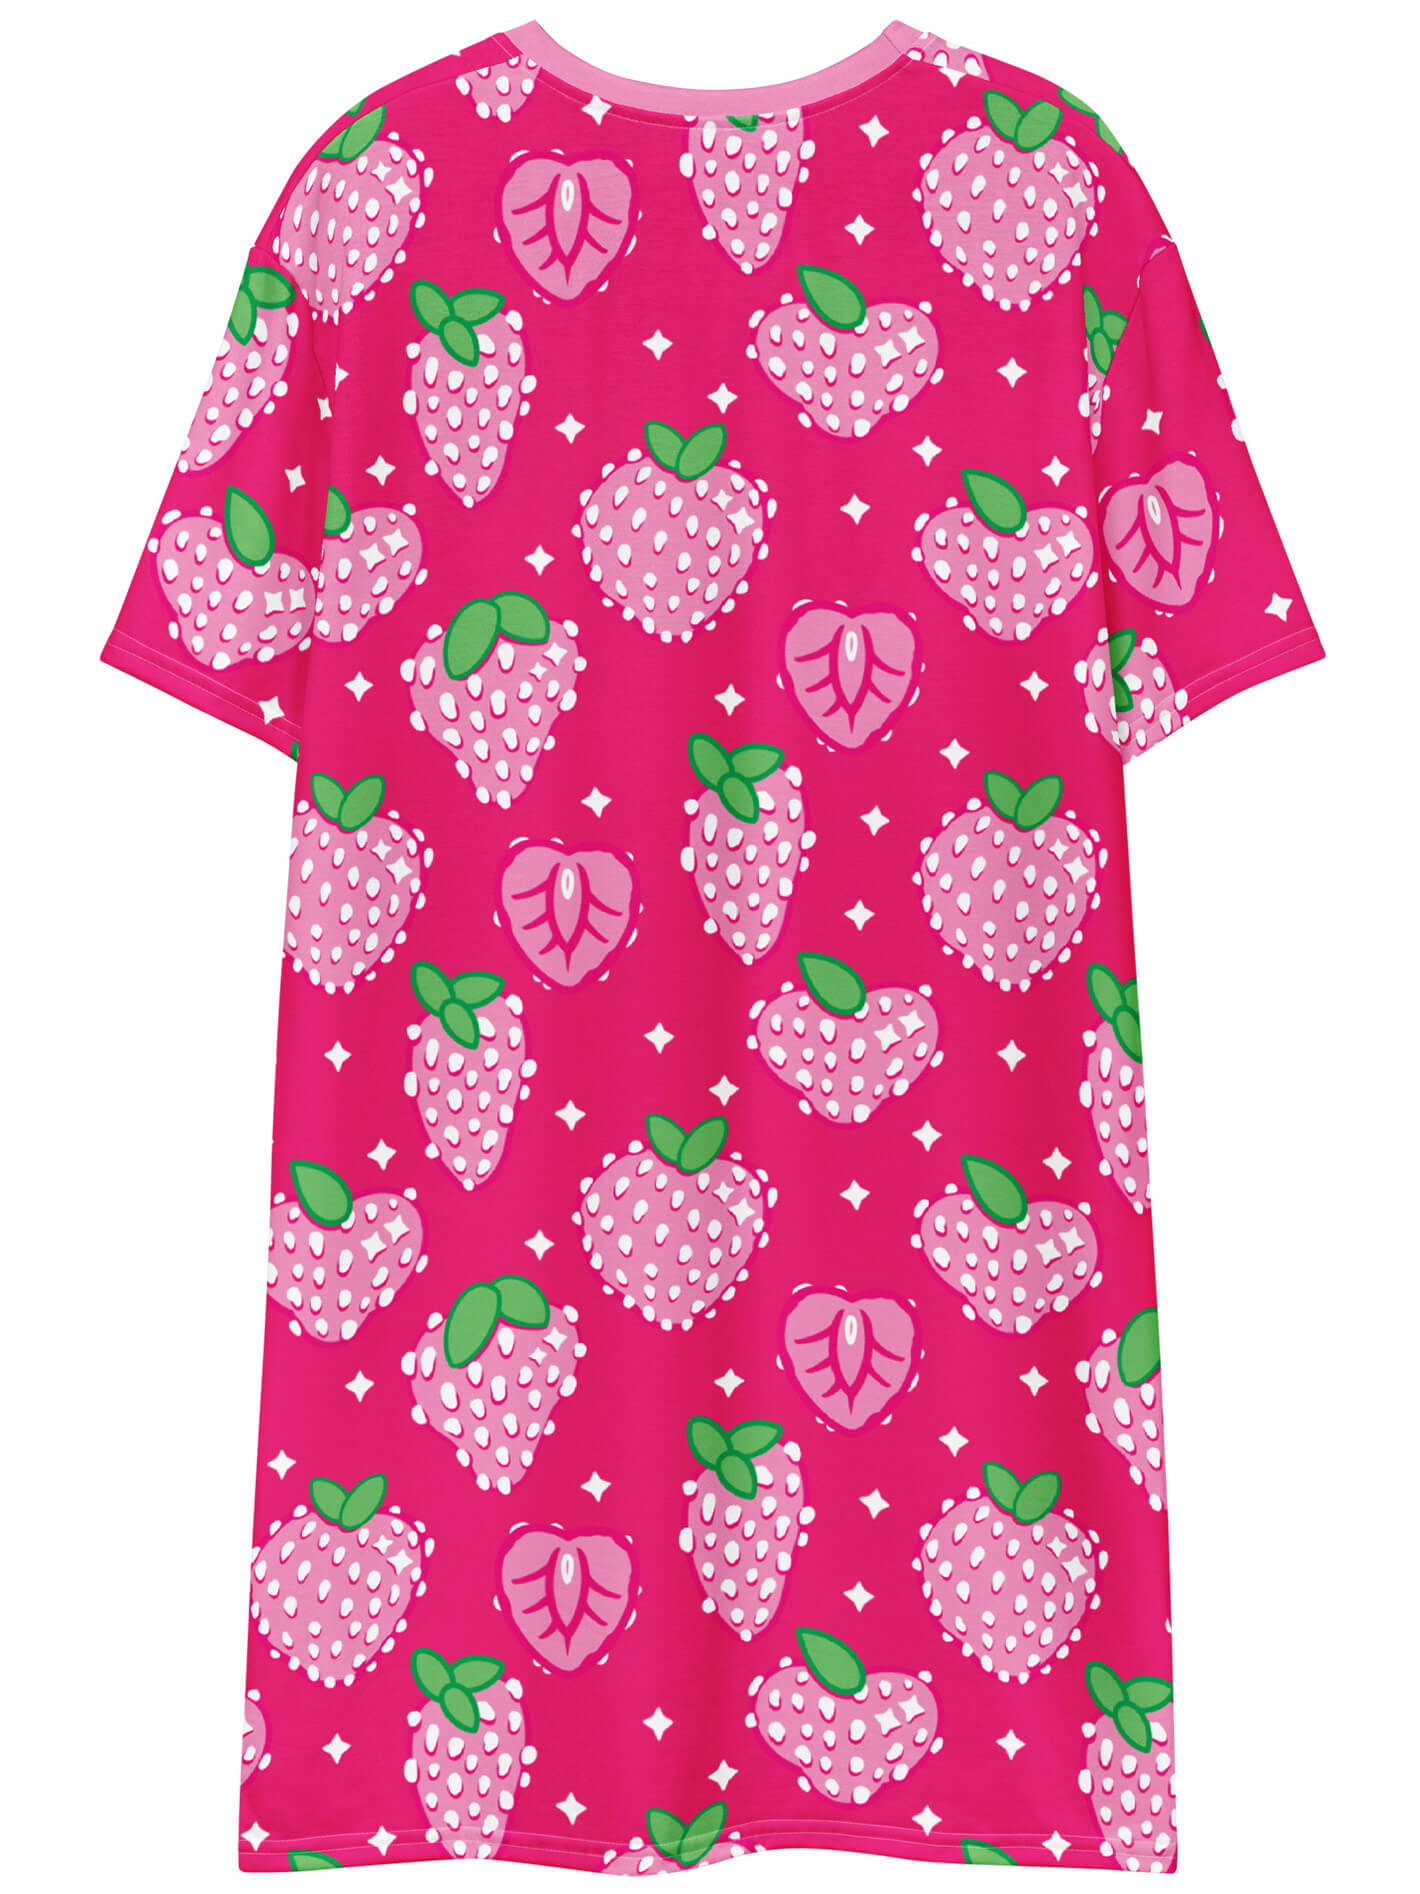 Strawberry plus size dress.